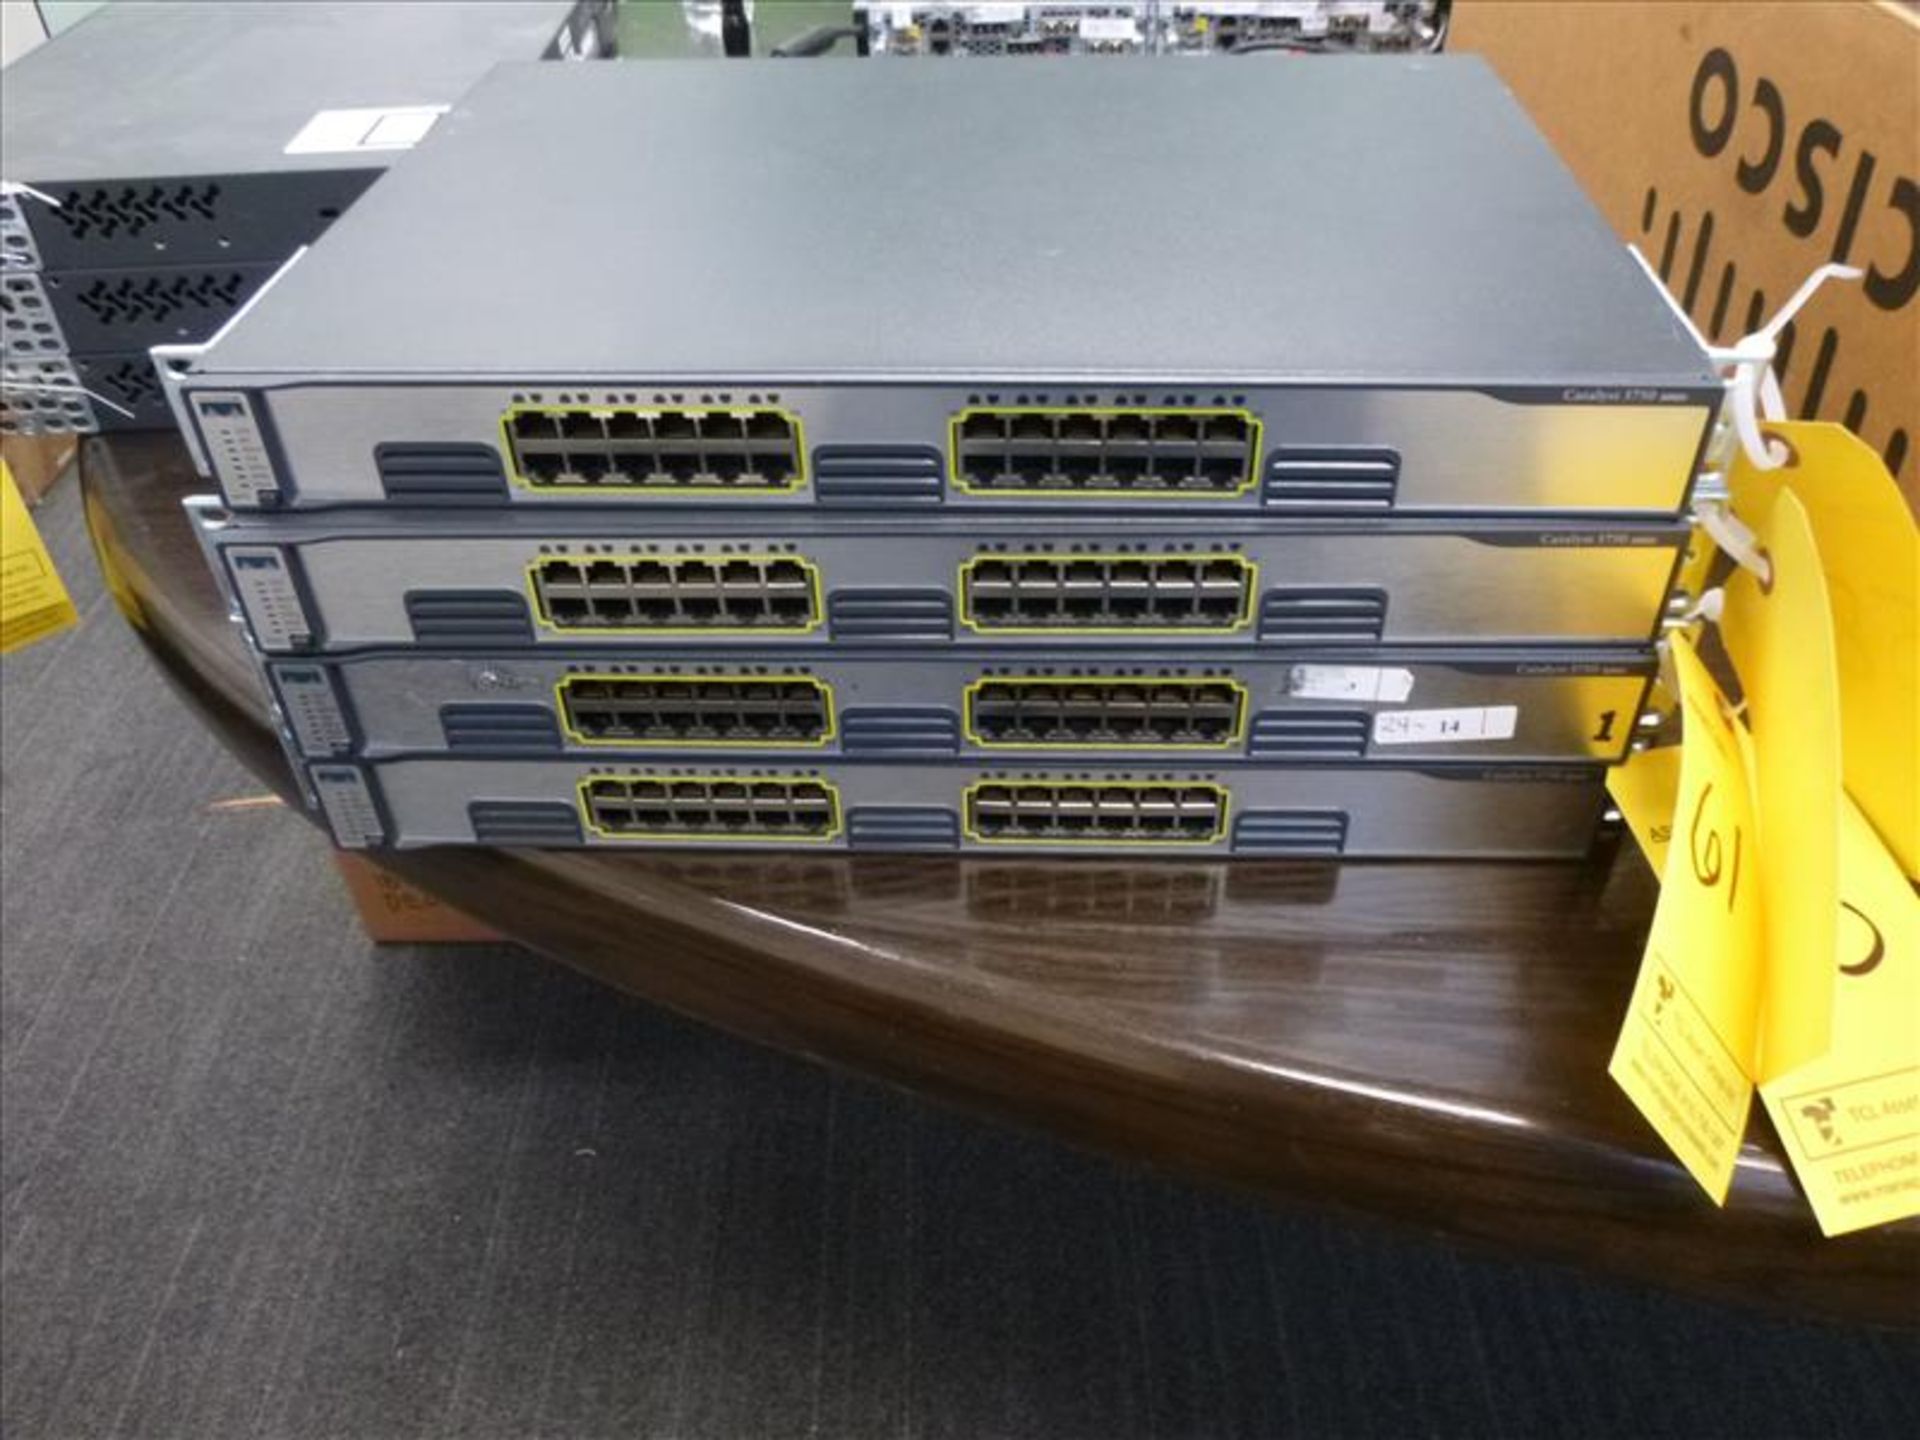 Cisco Catalyst 3750 router [1]